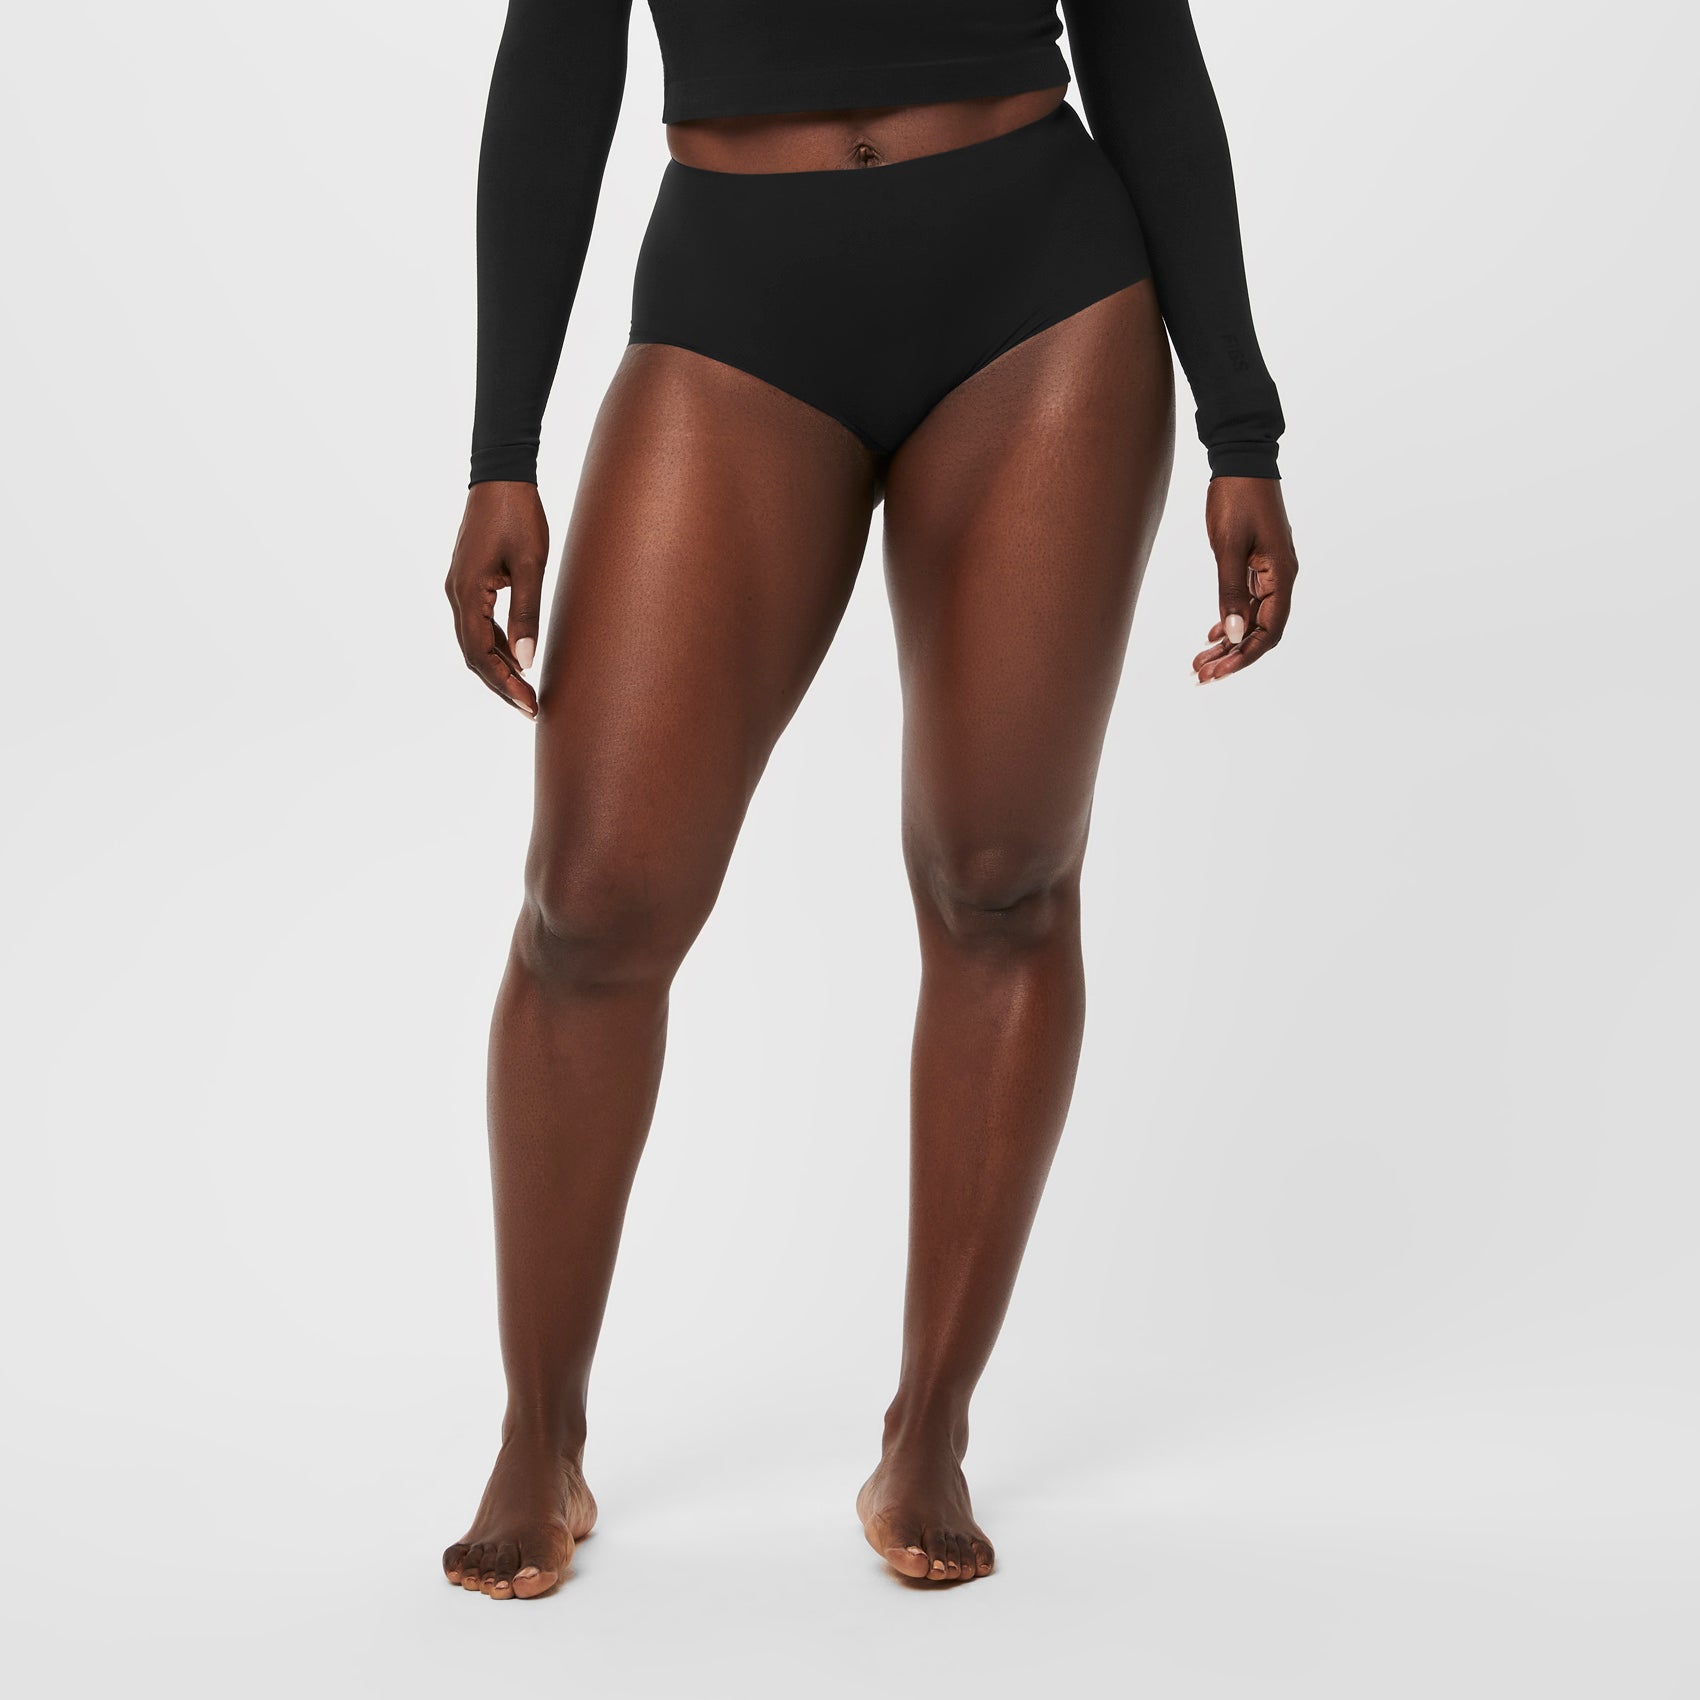 Women's FIGSPRO Skinny Trouser™ - Black